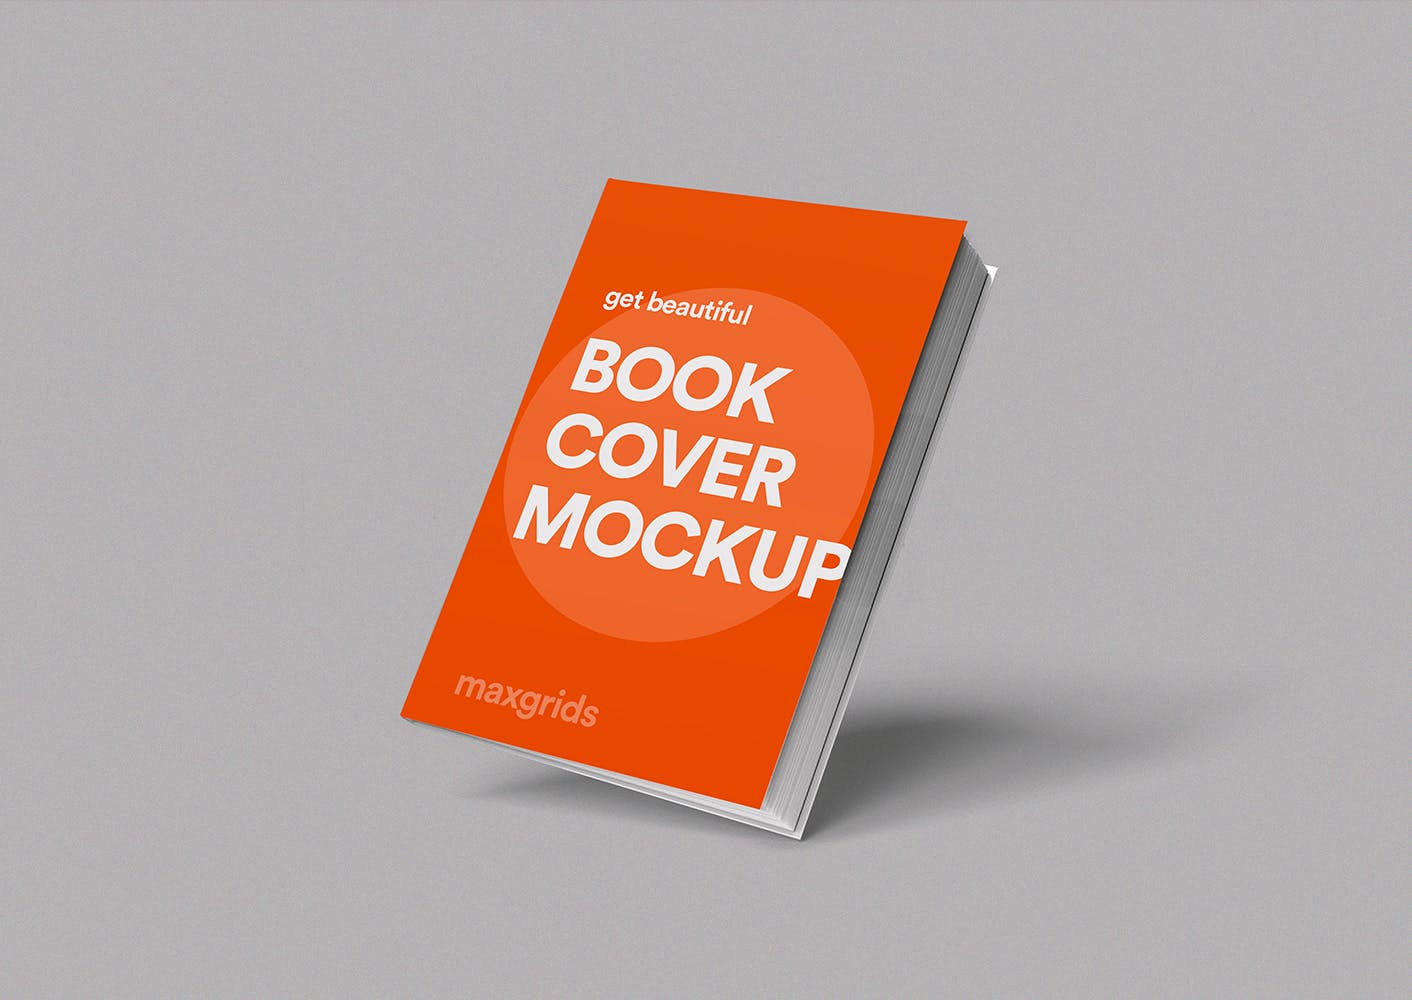 3D立体风格图书封面设计图样机第一素材精选v04 3D Book Mockup 04插图(3)